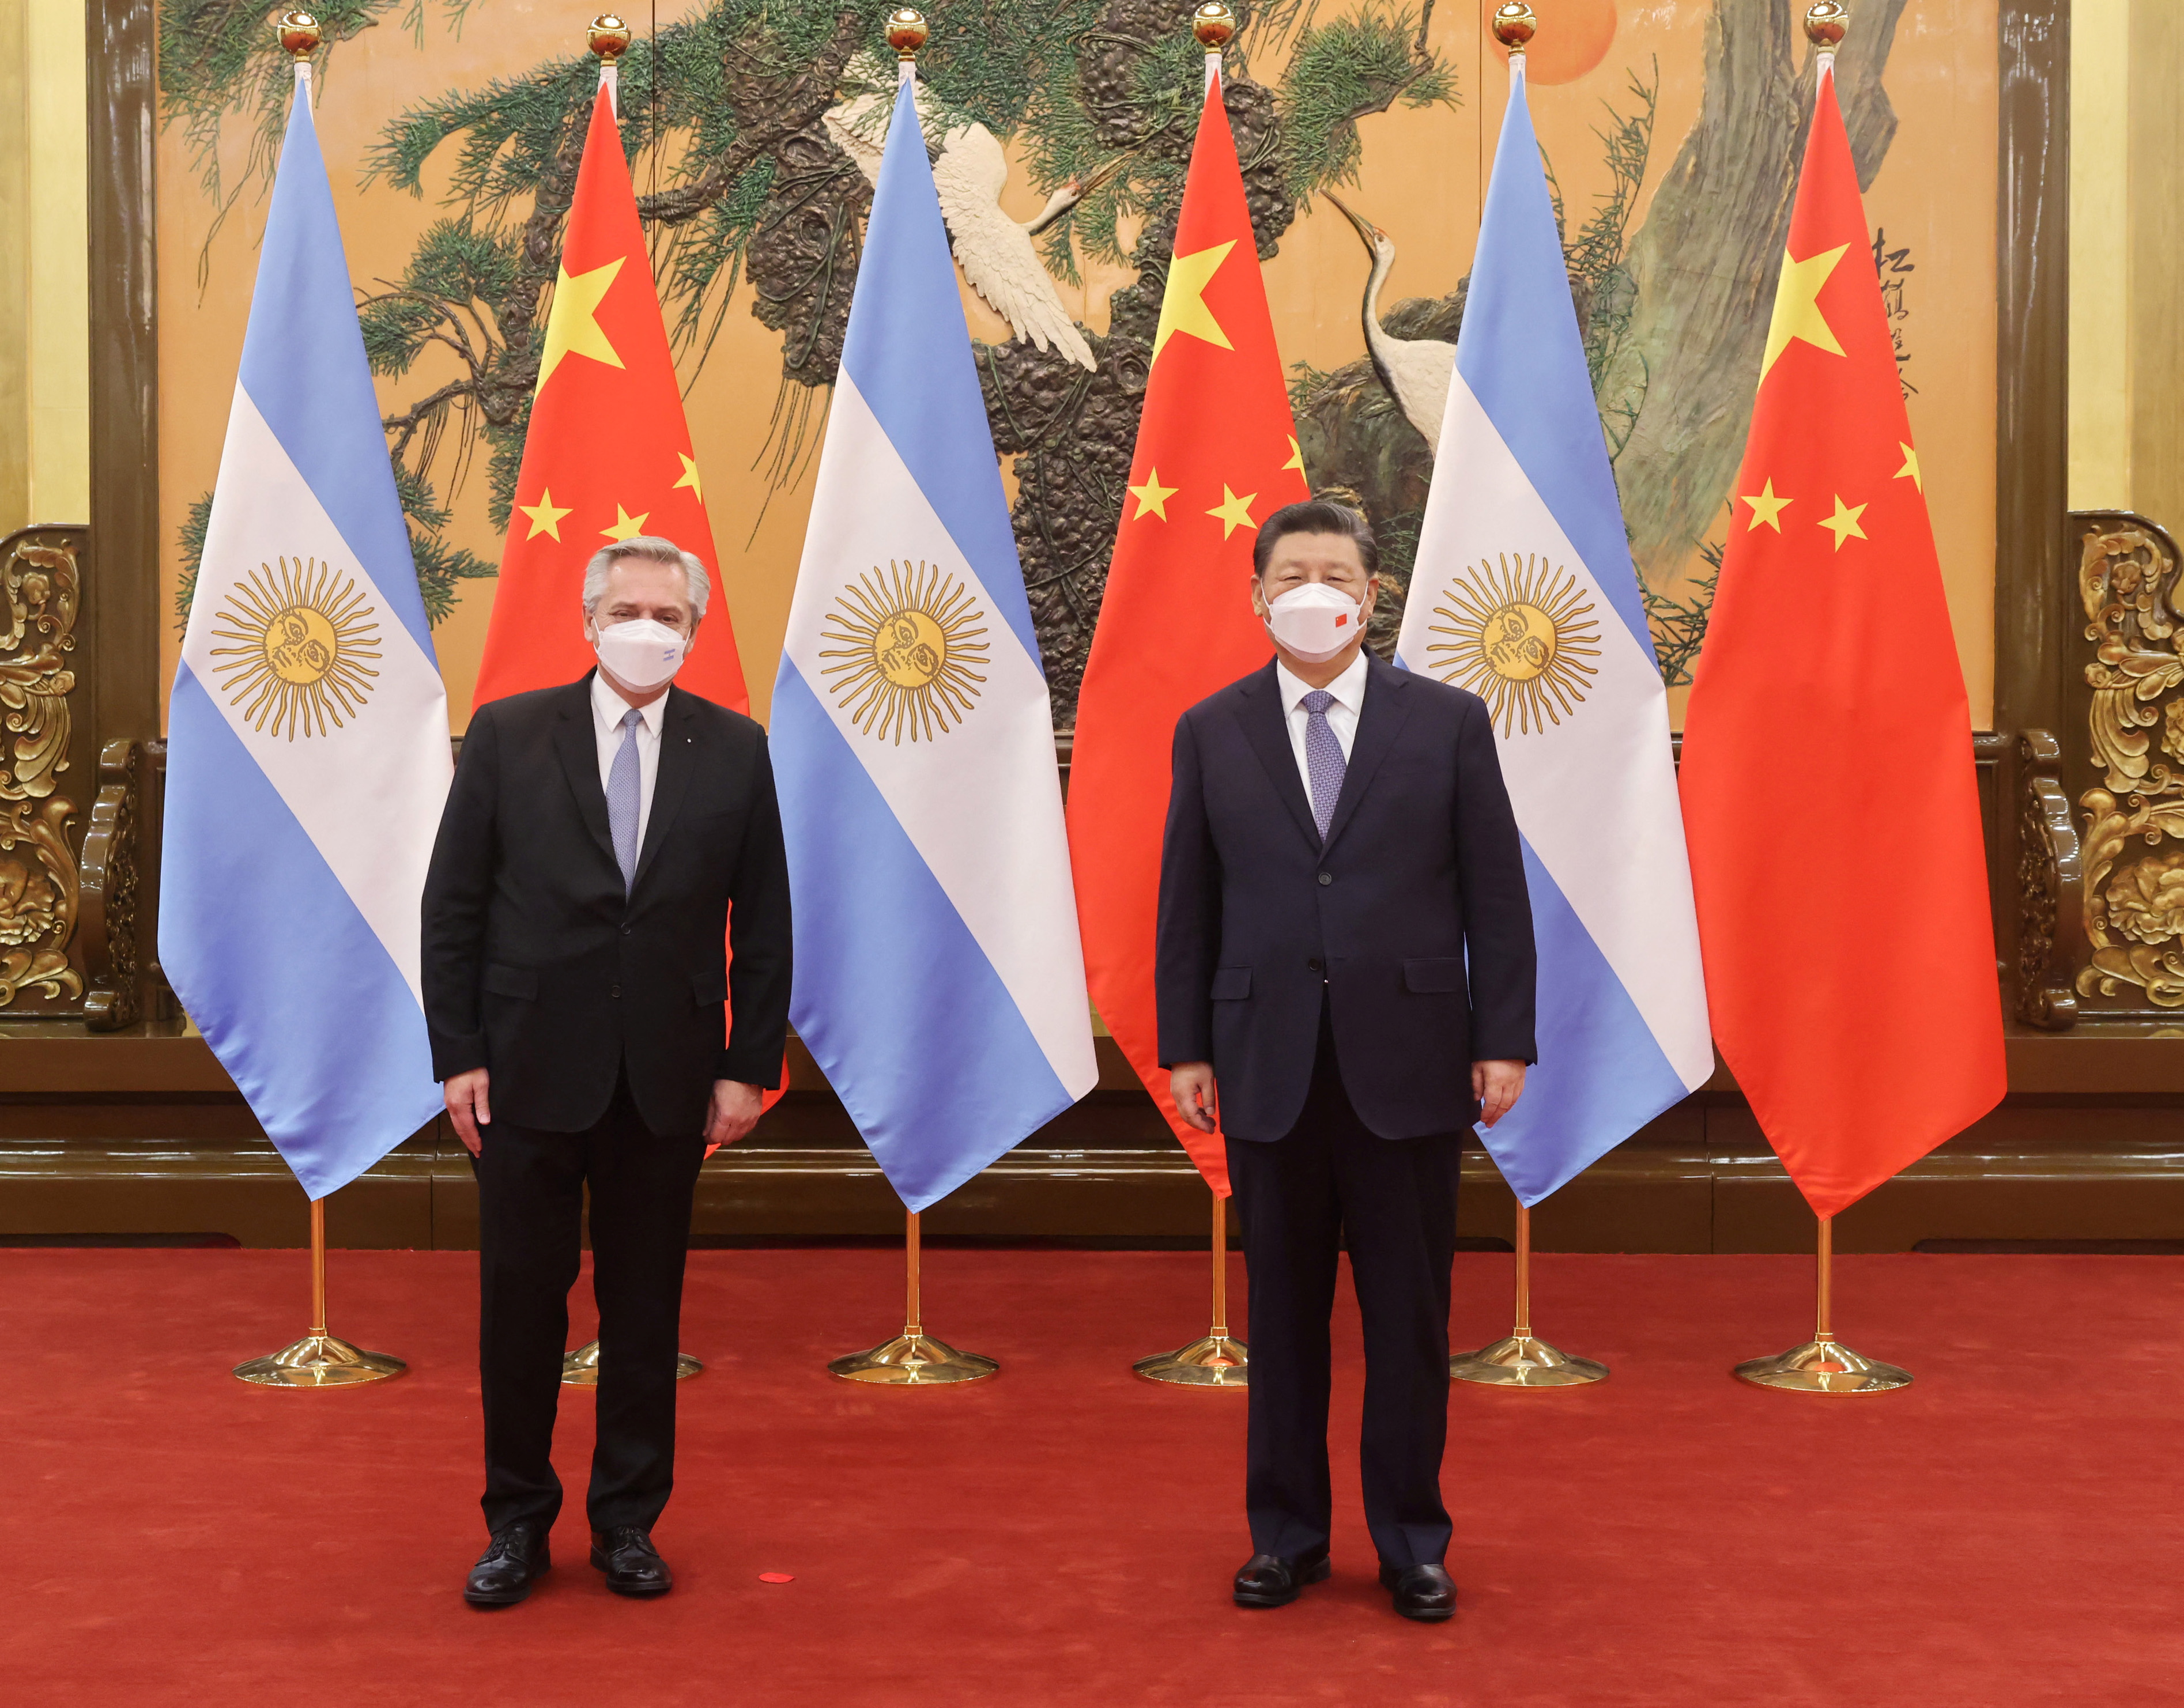 El presidente de China, Xi Jinping, junto al presidente de Argentina, Alberto Fernández, durante su reunión en Beijing, China, el 6 de febrero de 2022 (Presidencia de Argentina/Handout via REUTERS)